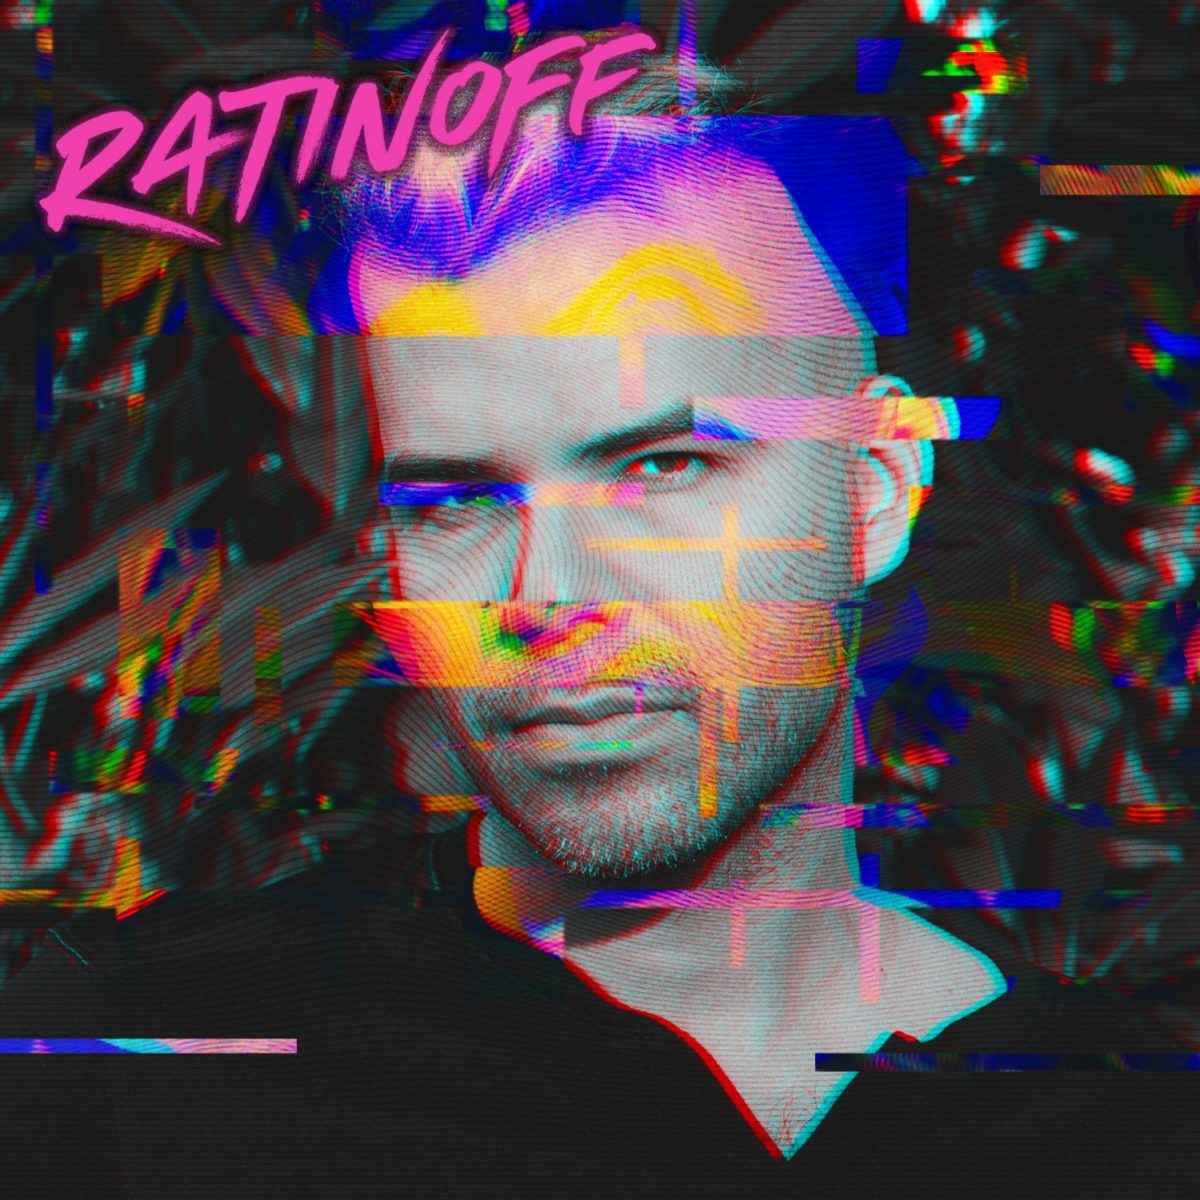 Ratinoff